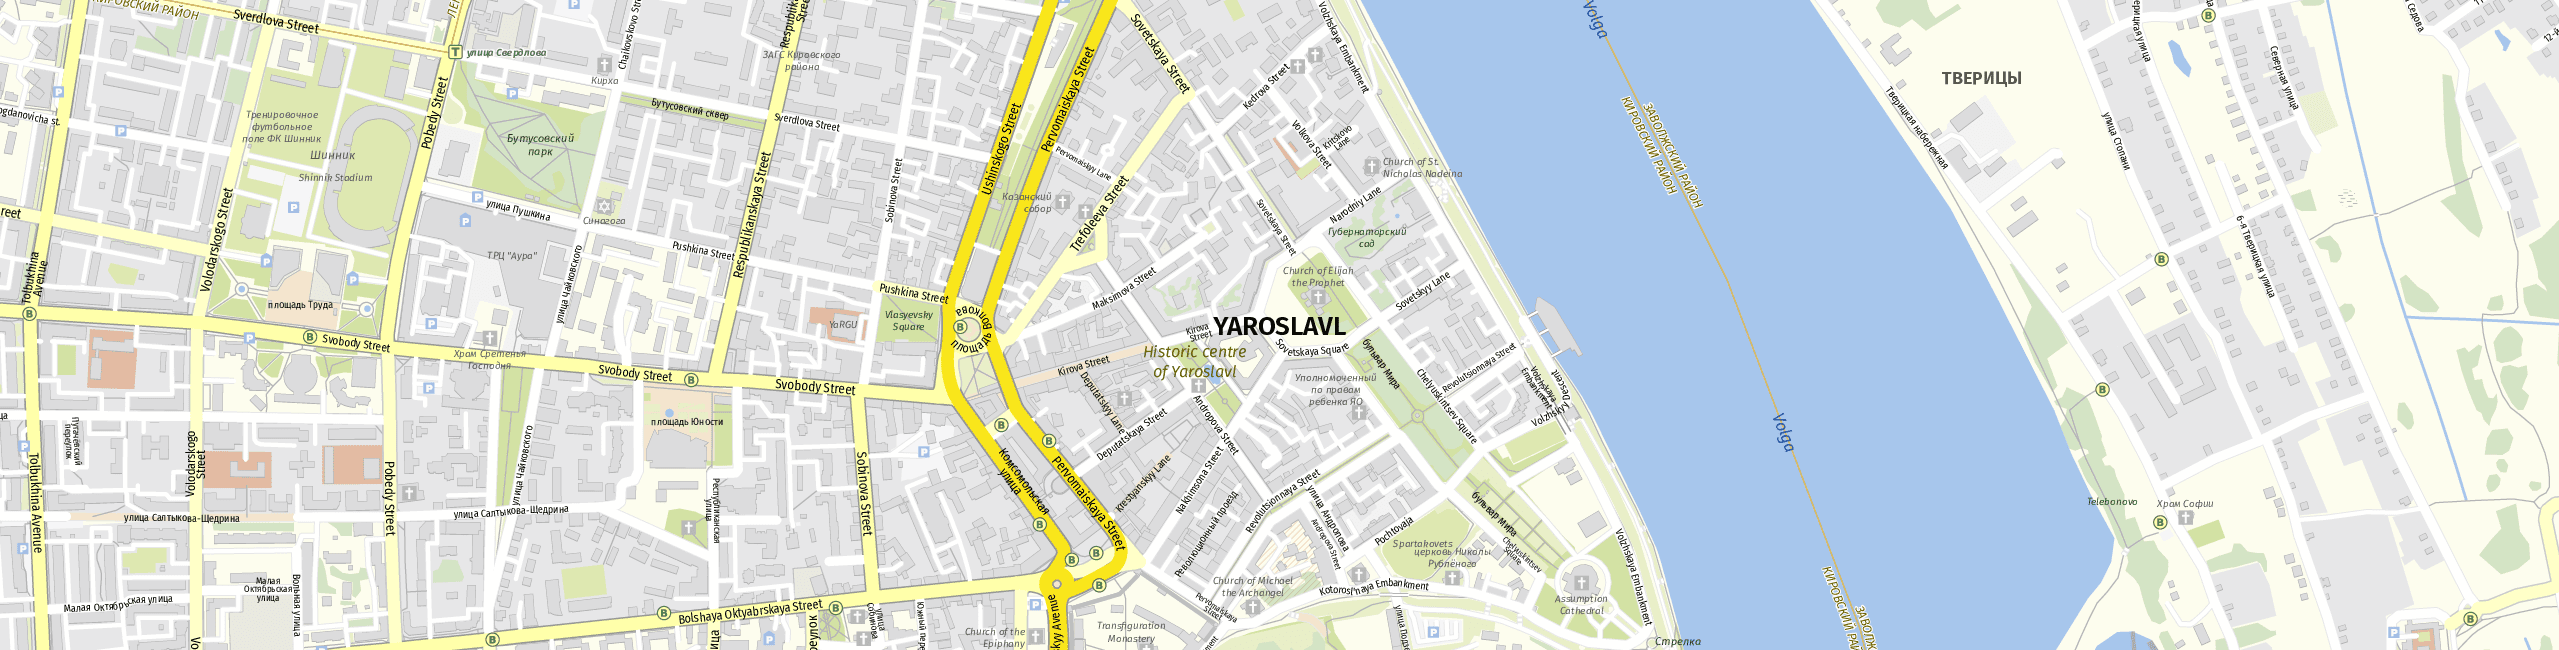 Stadtplan Jaroslawl zum Downloaden.